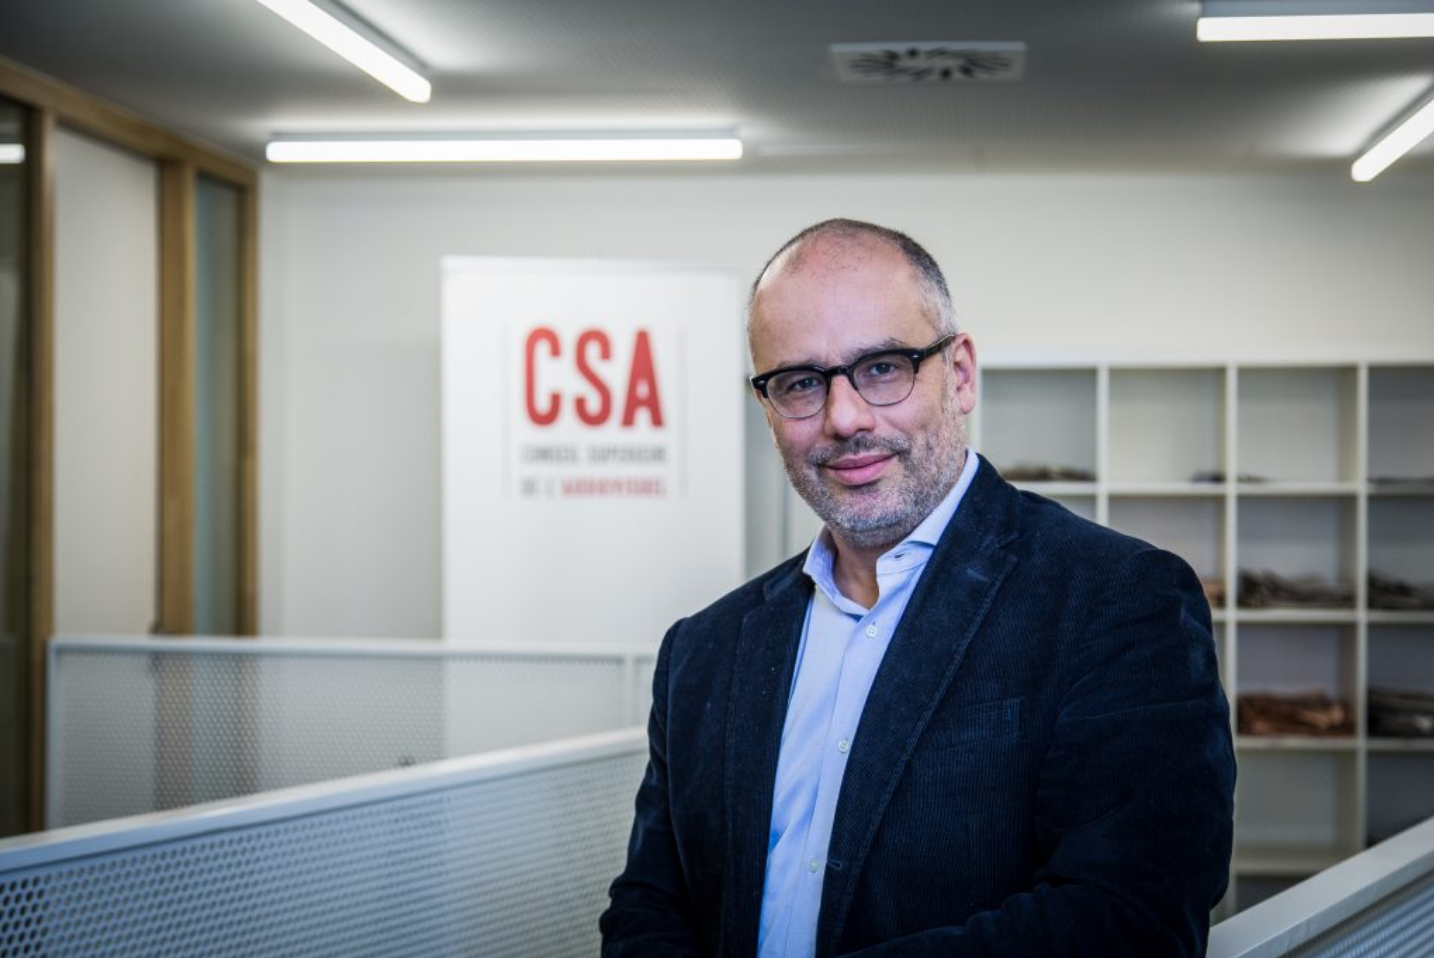 Fin novembre 2017, Karim Ibourki est devenu le nouveau Président du CSA en Belgique. Il succède à Dominique Vosters après un mandat de cinq ans entamé en 2013.